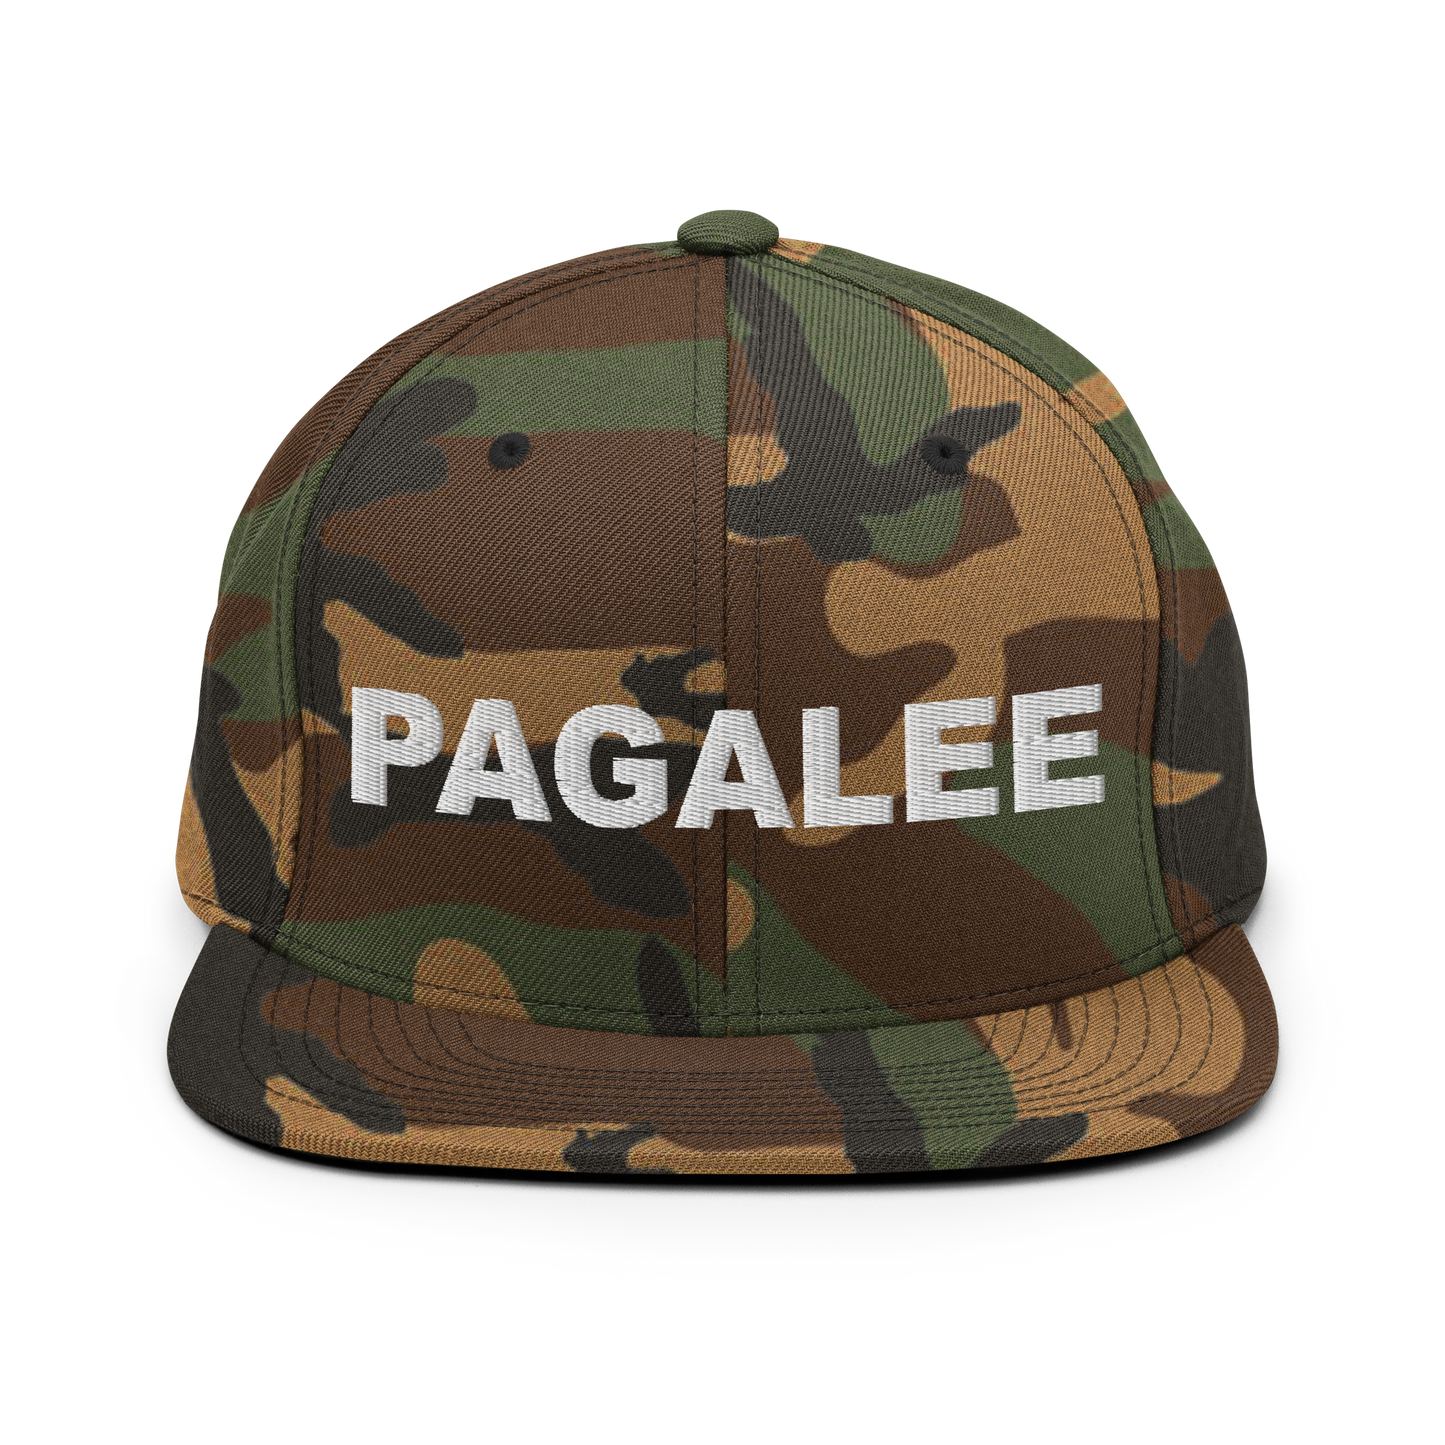 Pagalee Snapback Hat